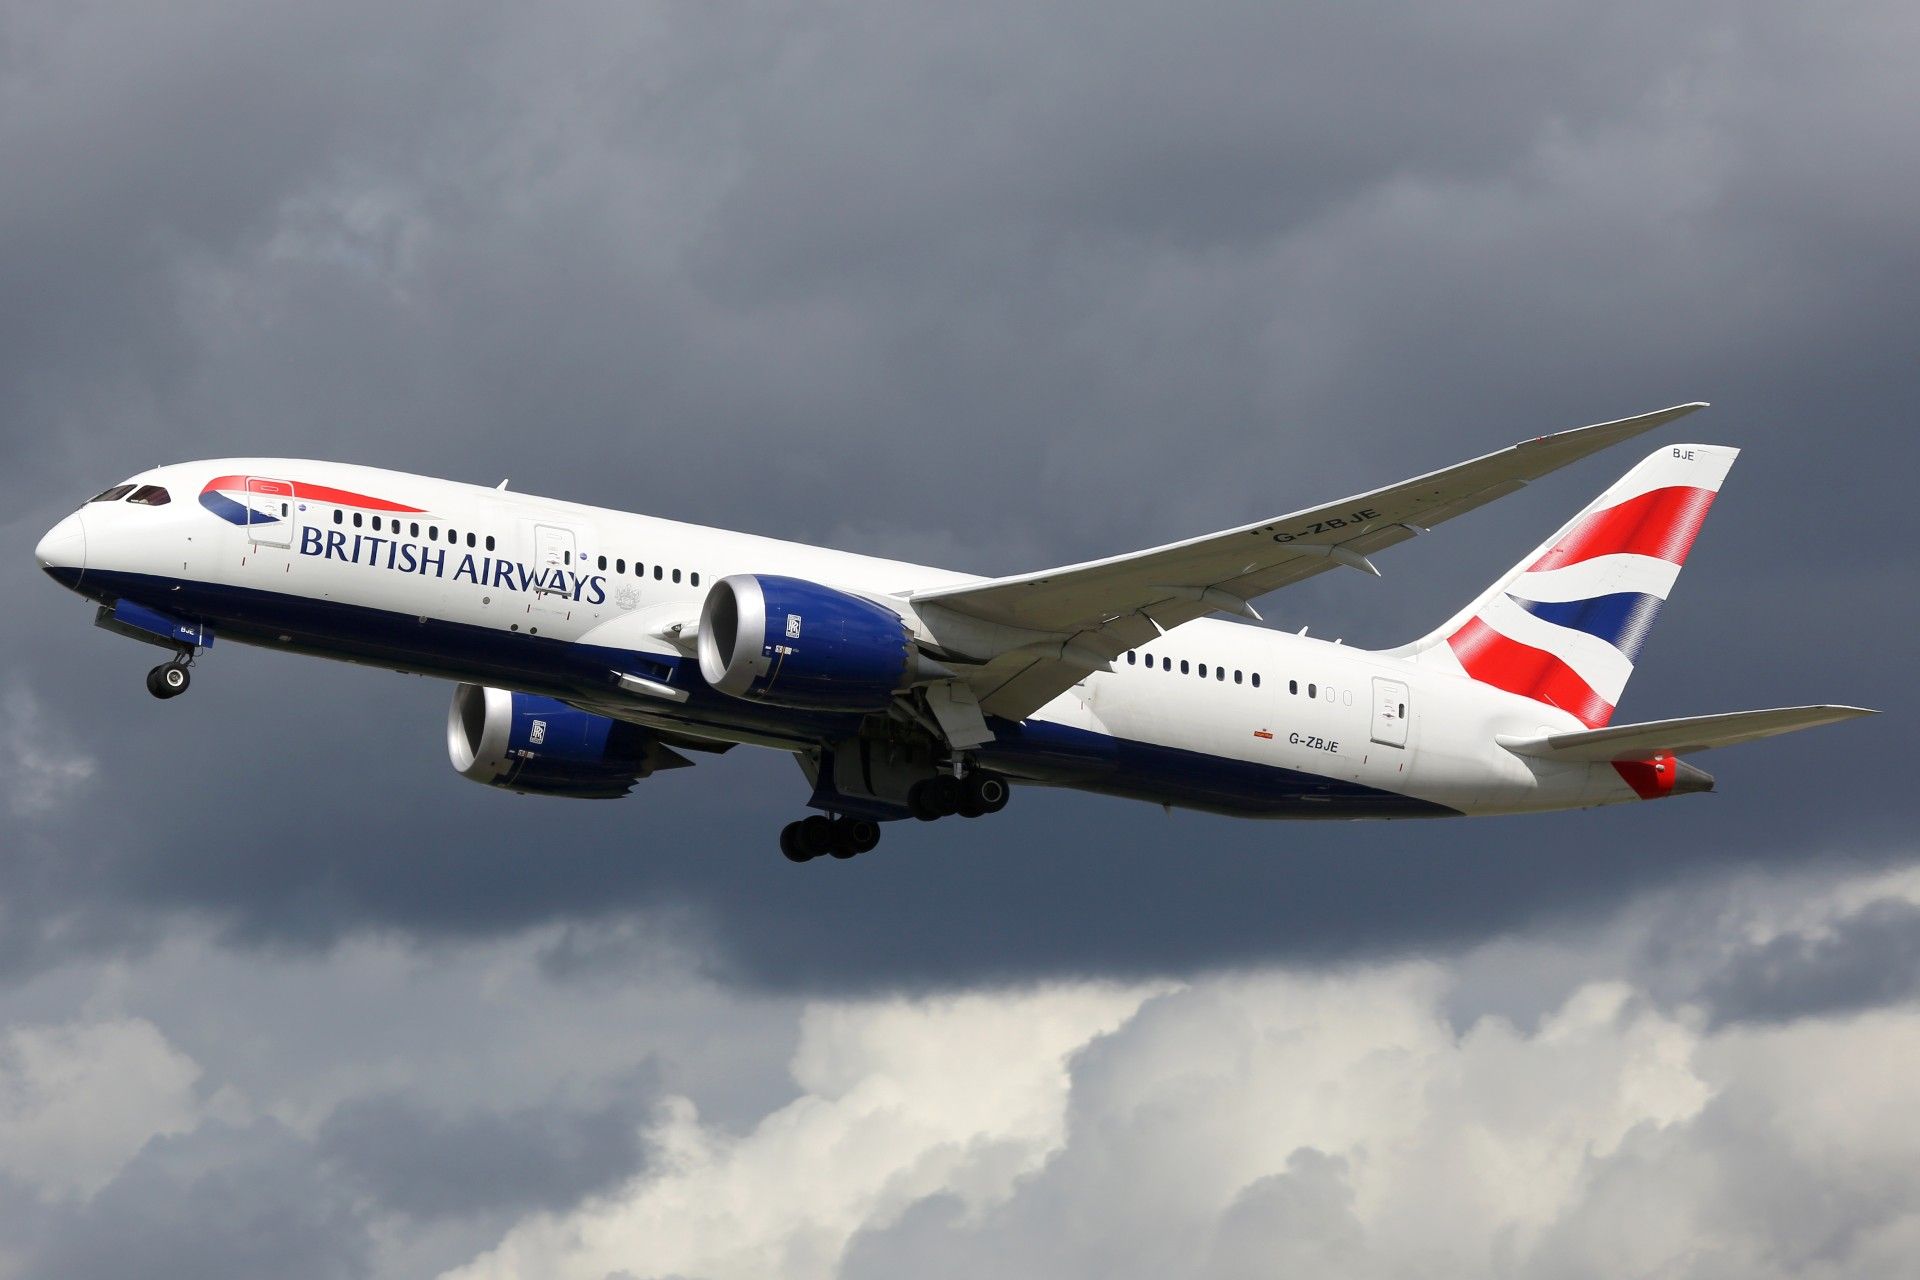 A British Airways flight in a dark, cloudy sky - british airways fine